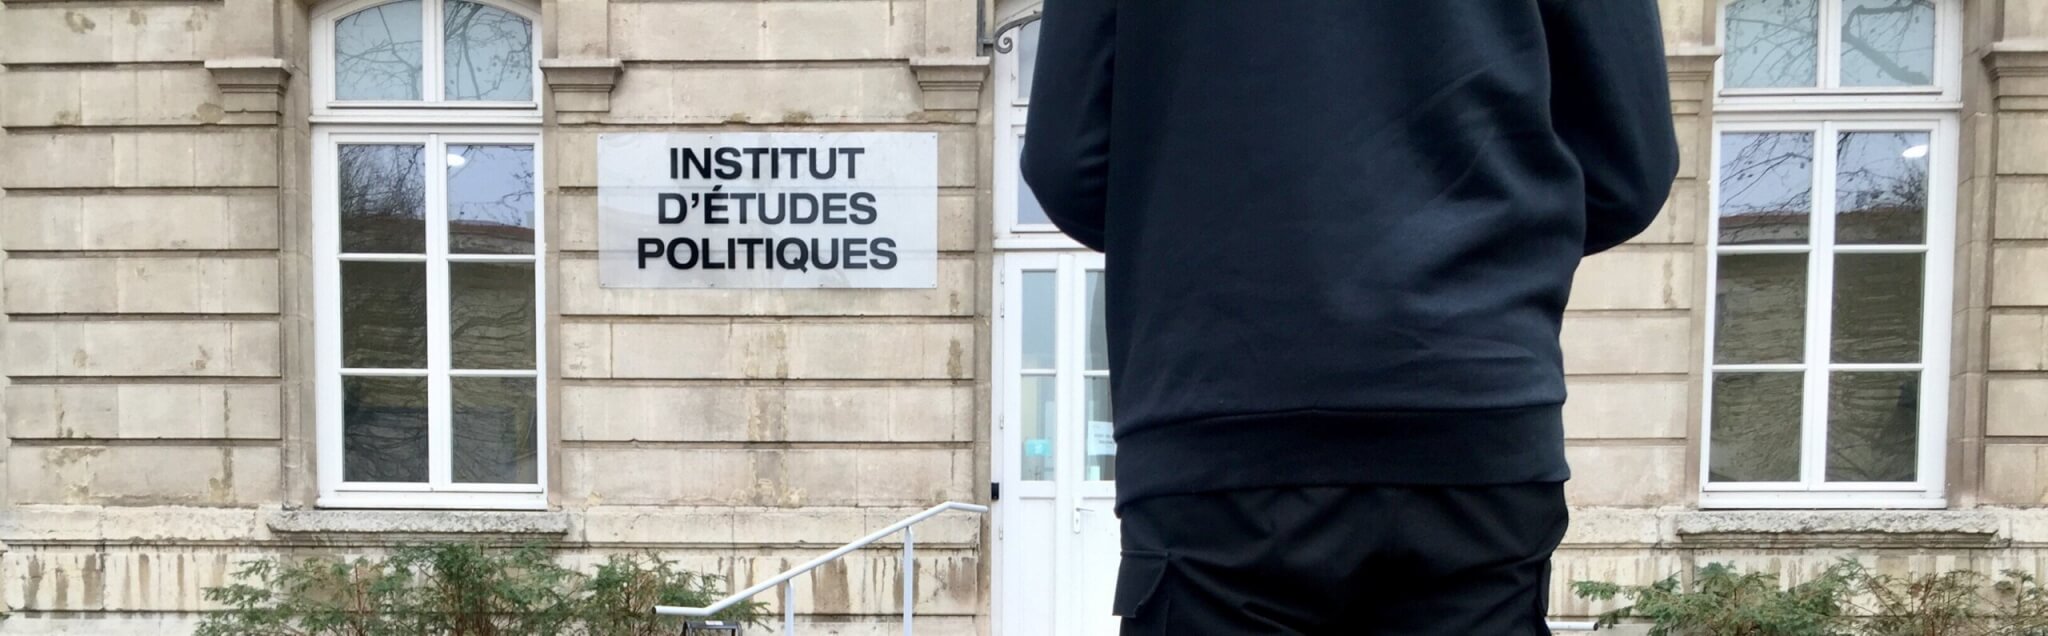 Entrée Sciences Po Lyon Institut d'études politiques